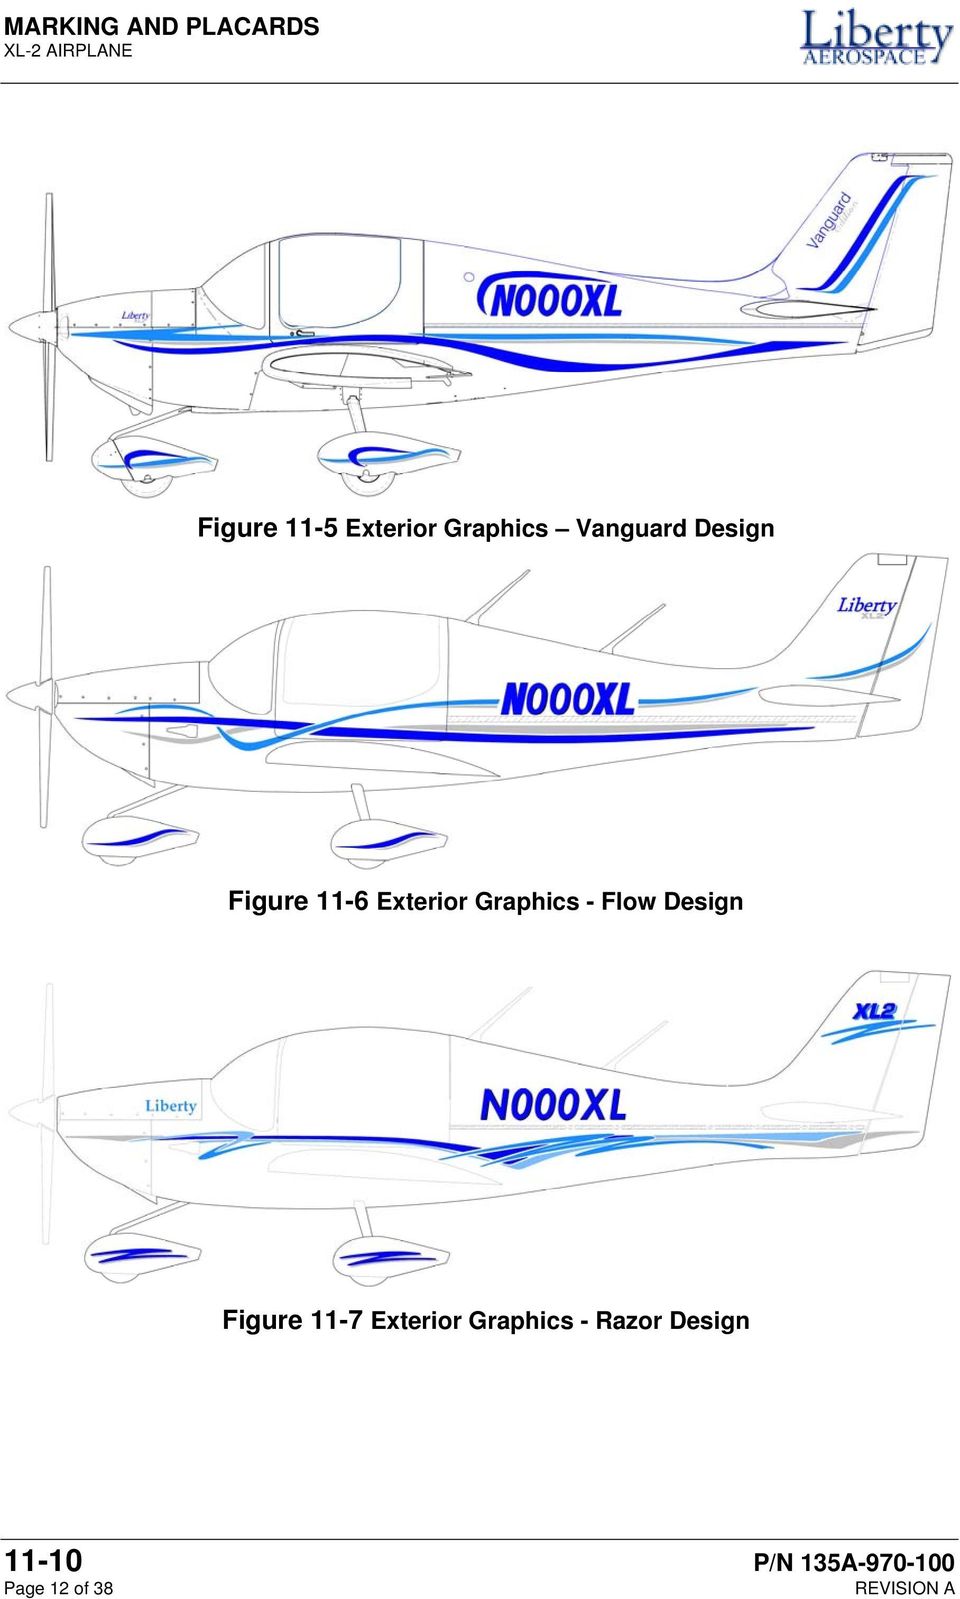 Figure 11-7 Exterior Graphics - Razor Design